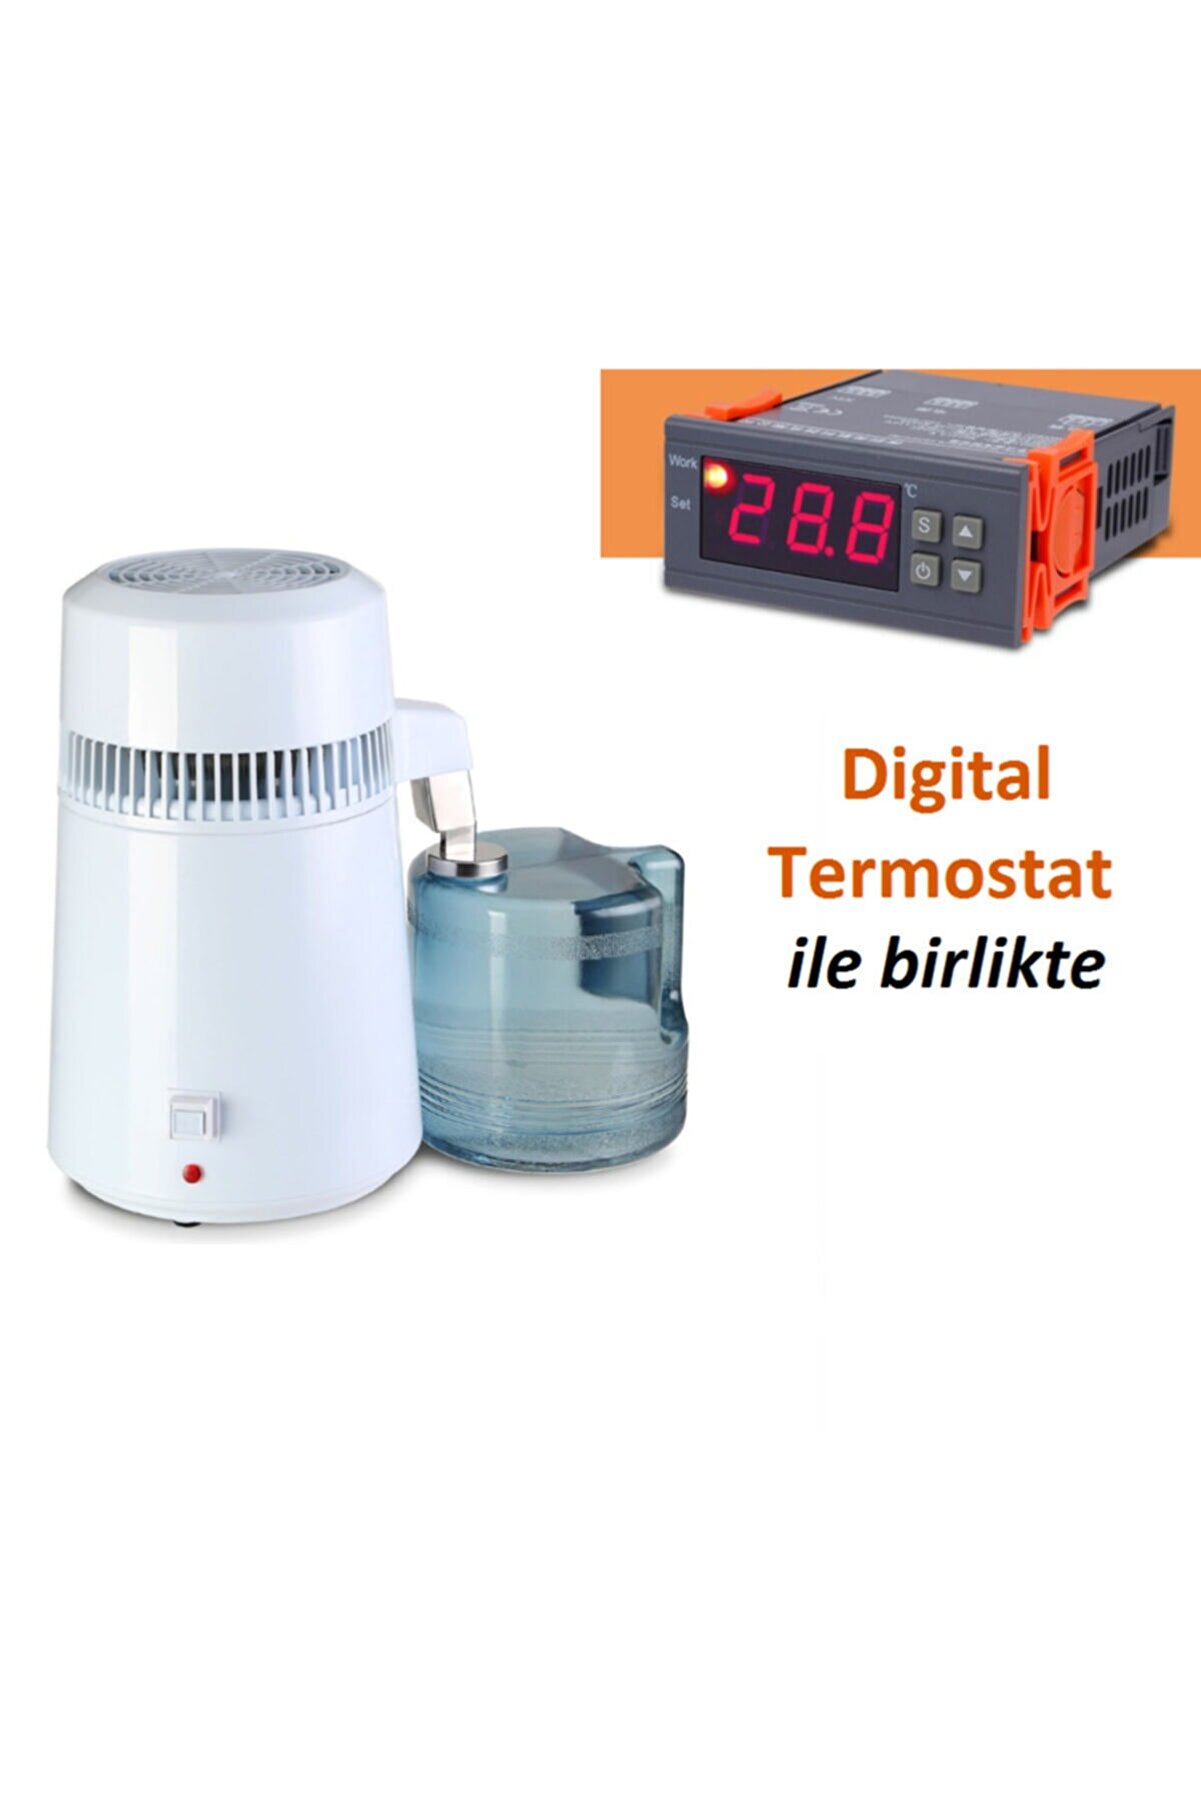 Dentreal Distile Saf Su Damıtma Ve Imbik Cihazı Sıcaklık Kontrollü Dijital Termostat Ile Birlikte